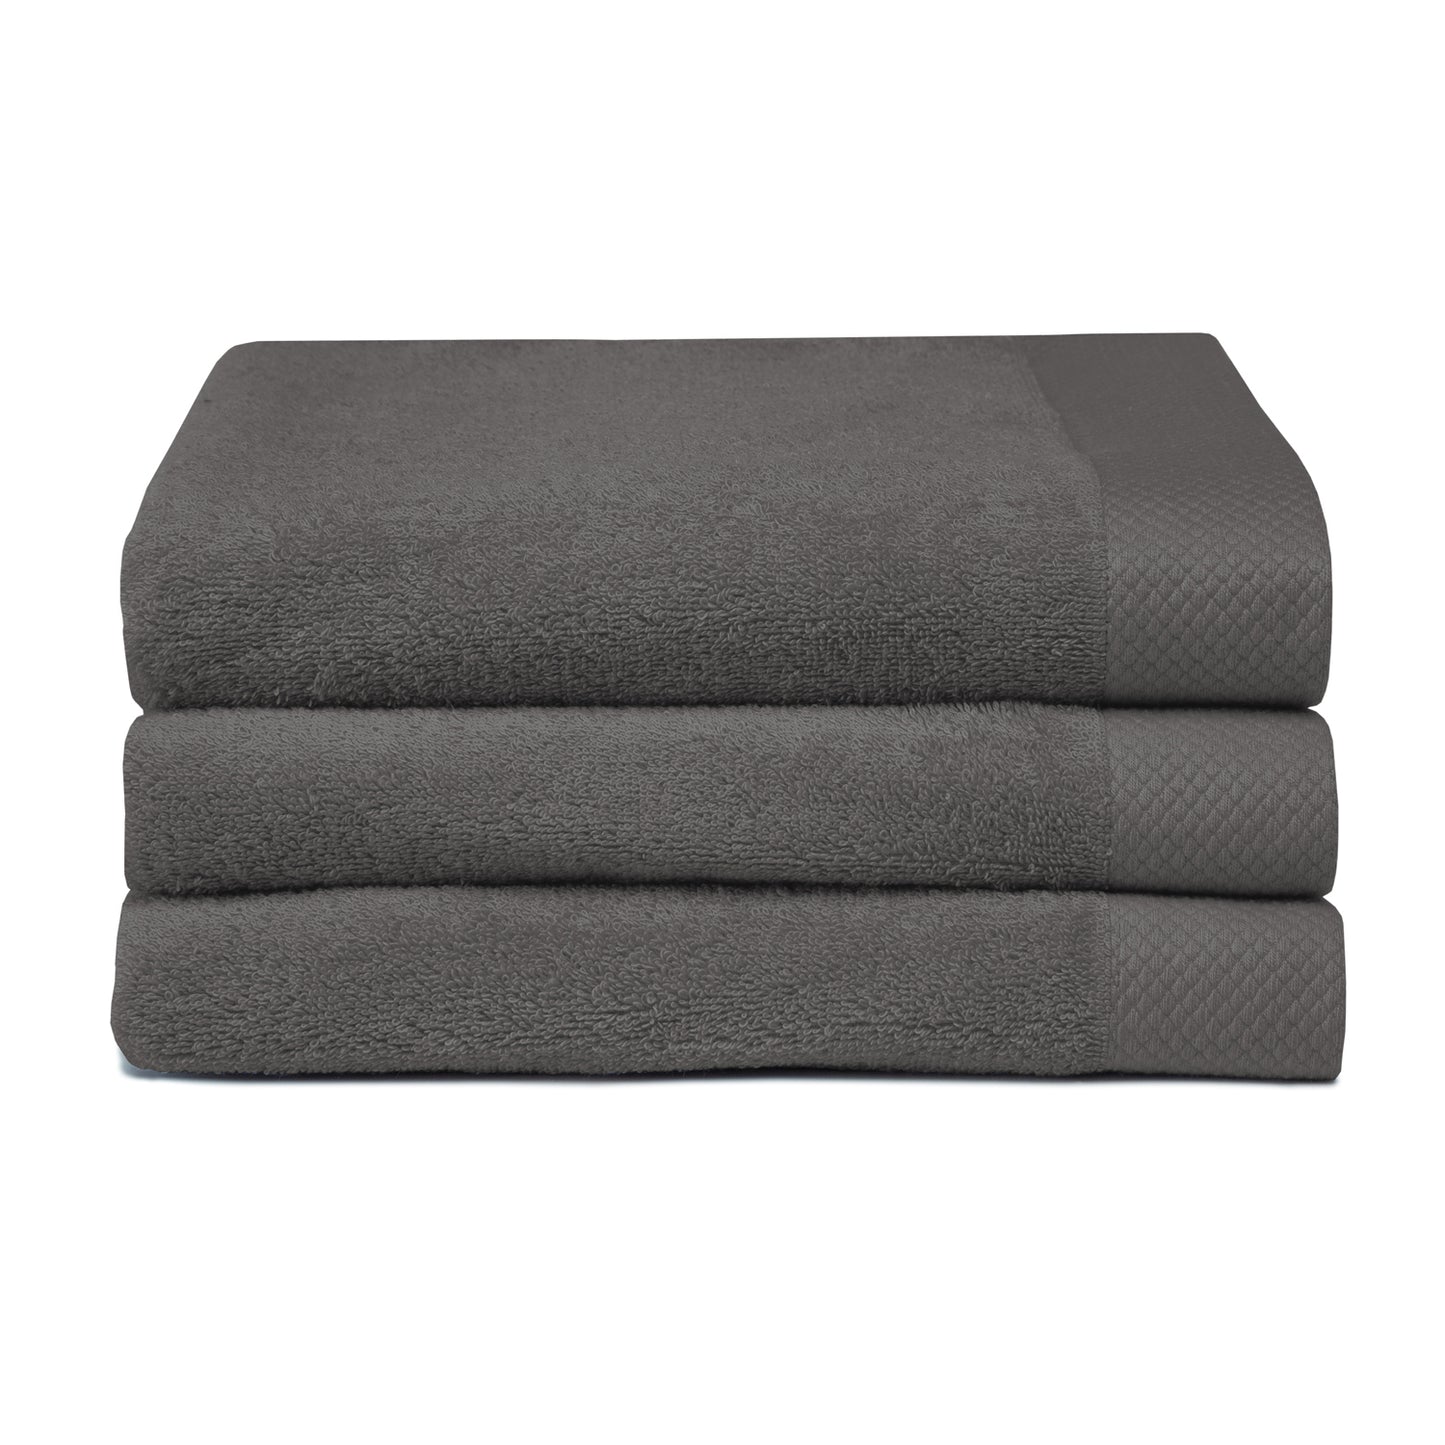 Van der Valk handdoek graphite grijs